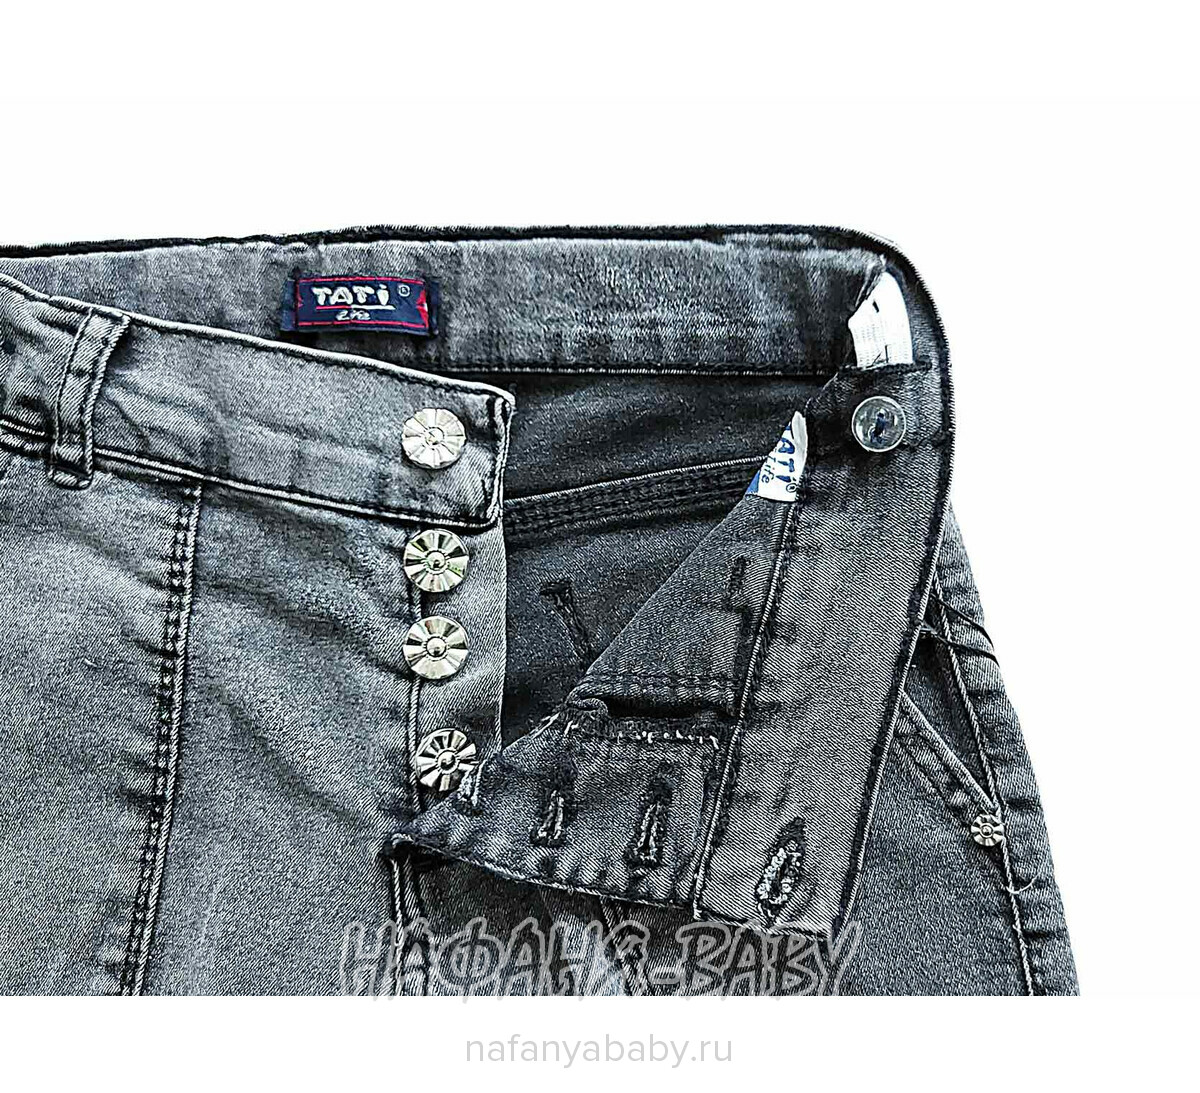 Джинсы подростковые TATI Jeans арт: 1020, 8-12 лет, цвет черный, поштучно,Турция